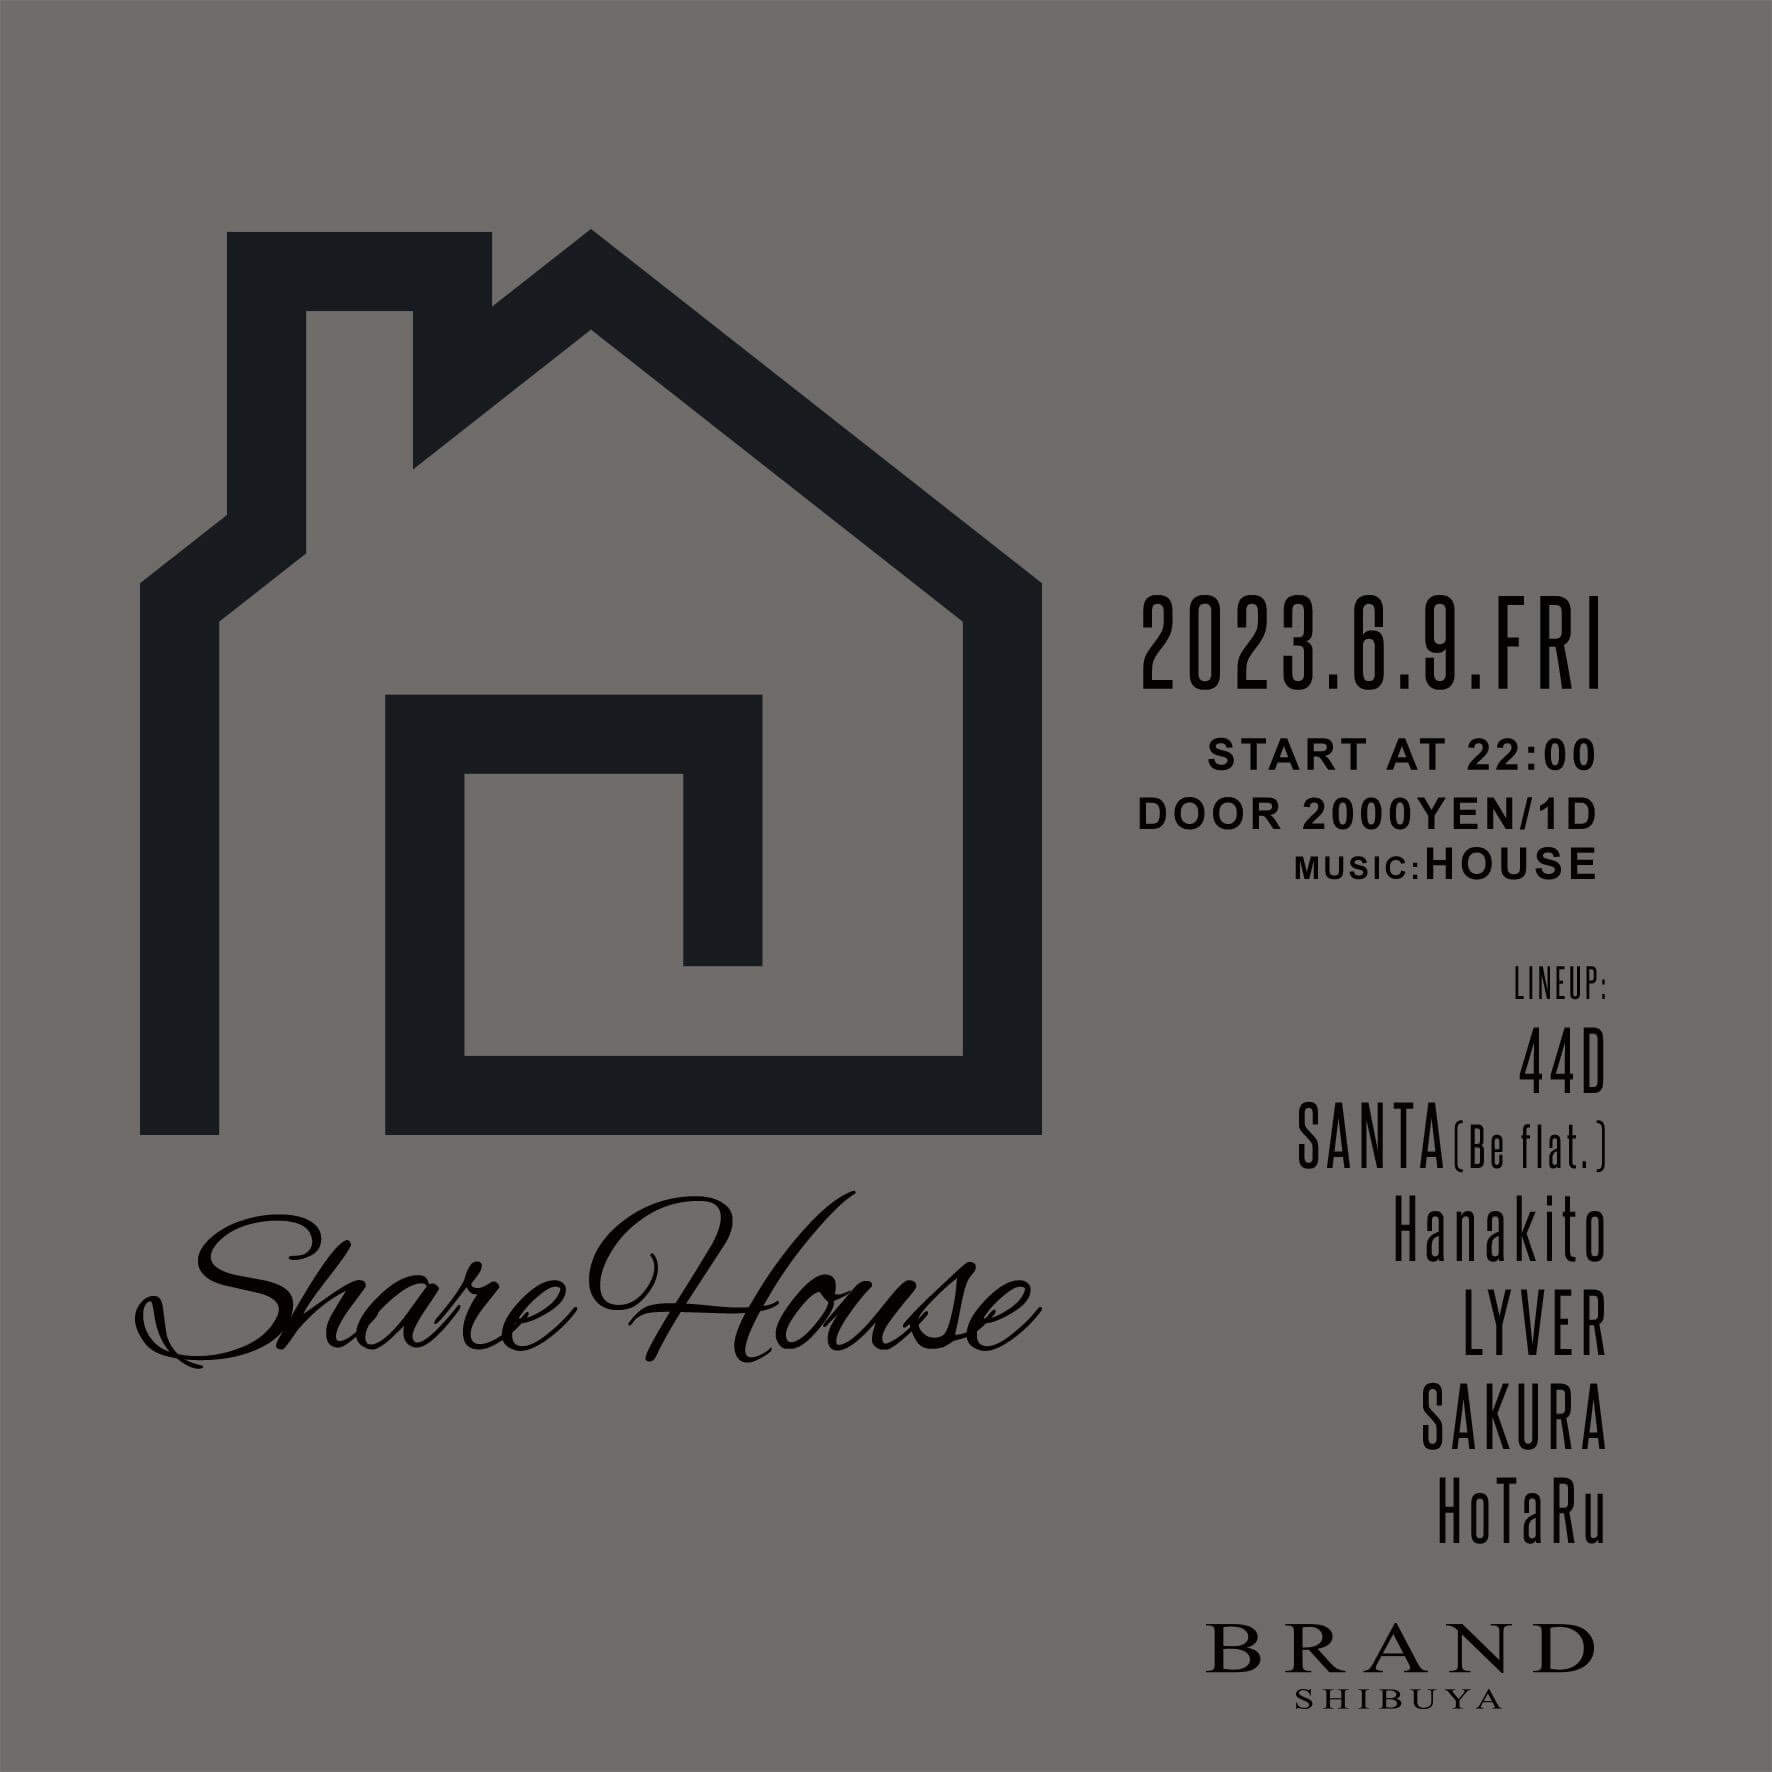 Share House 2023年06月09日（金曜日）に渋谷 クラブのBRAND SHIBUYAで開催されるHOUSEイベント